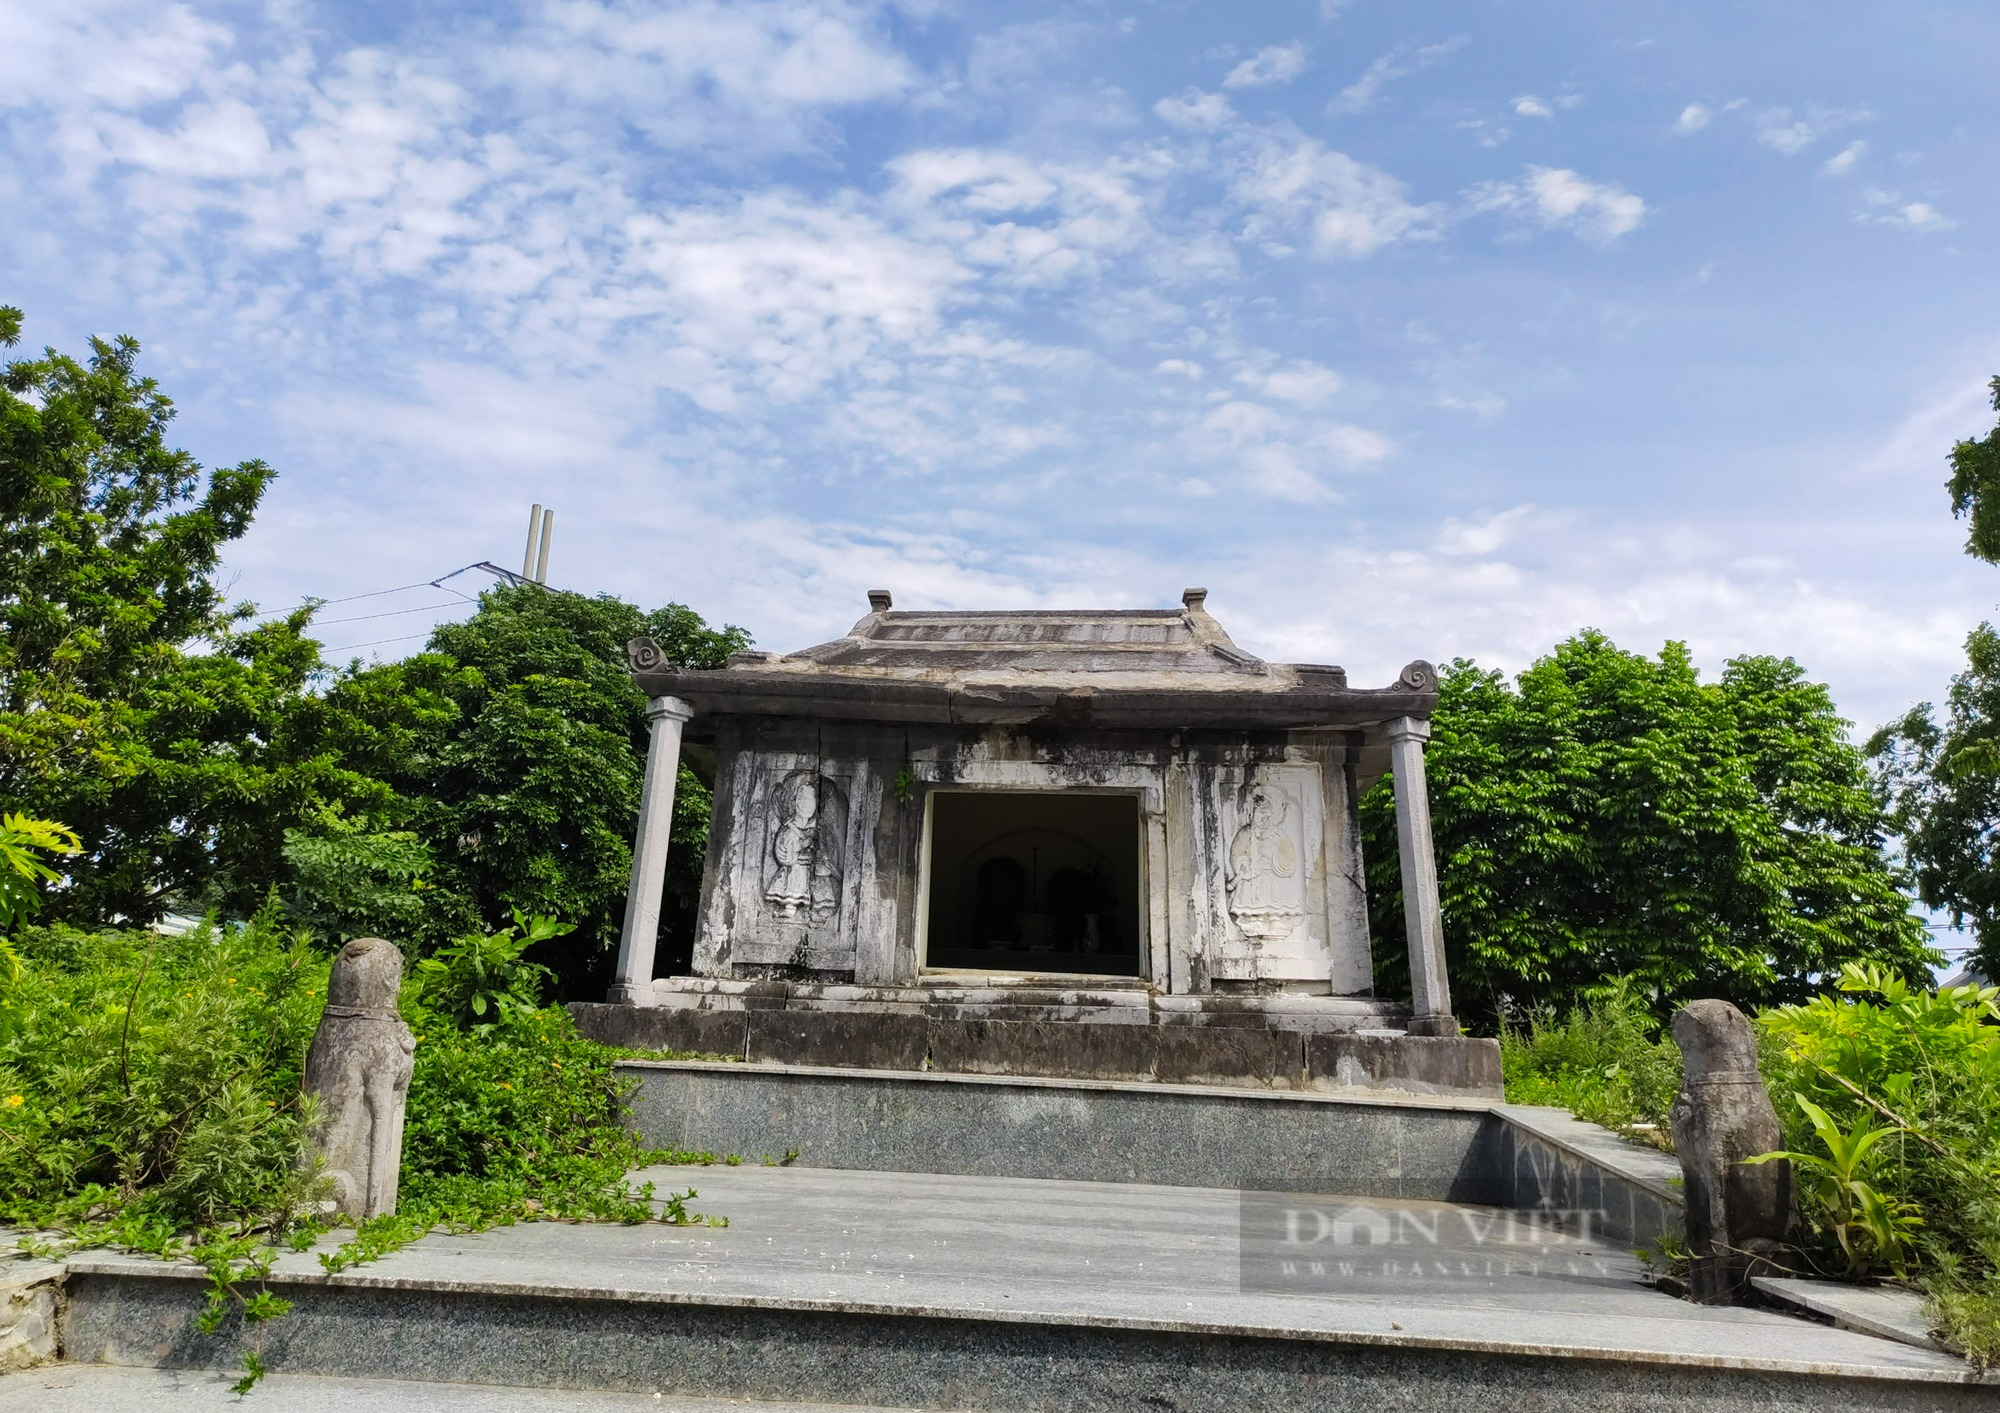 Bí ẩn phía sau lăng mộ đá thời Lê Trịnh ít người biết đến ở Hà Nội - Ảnh 9.